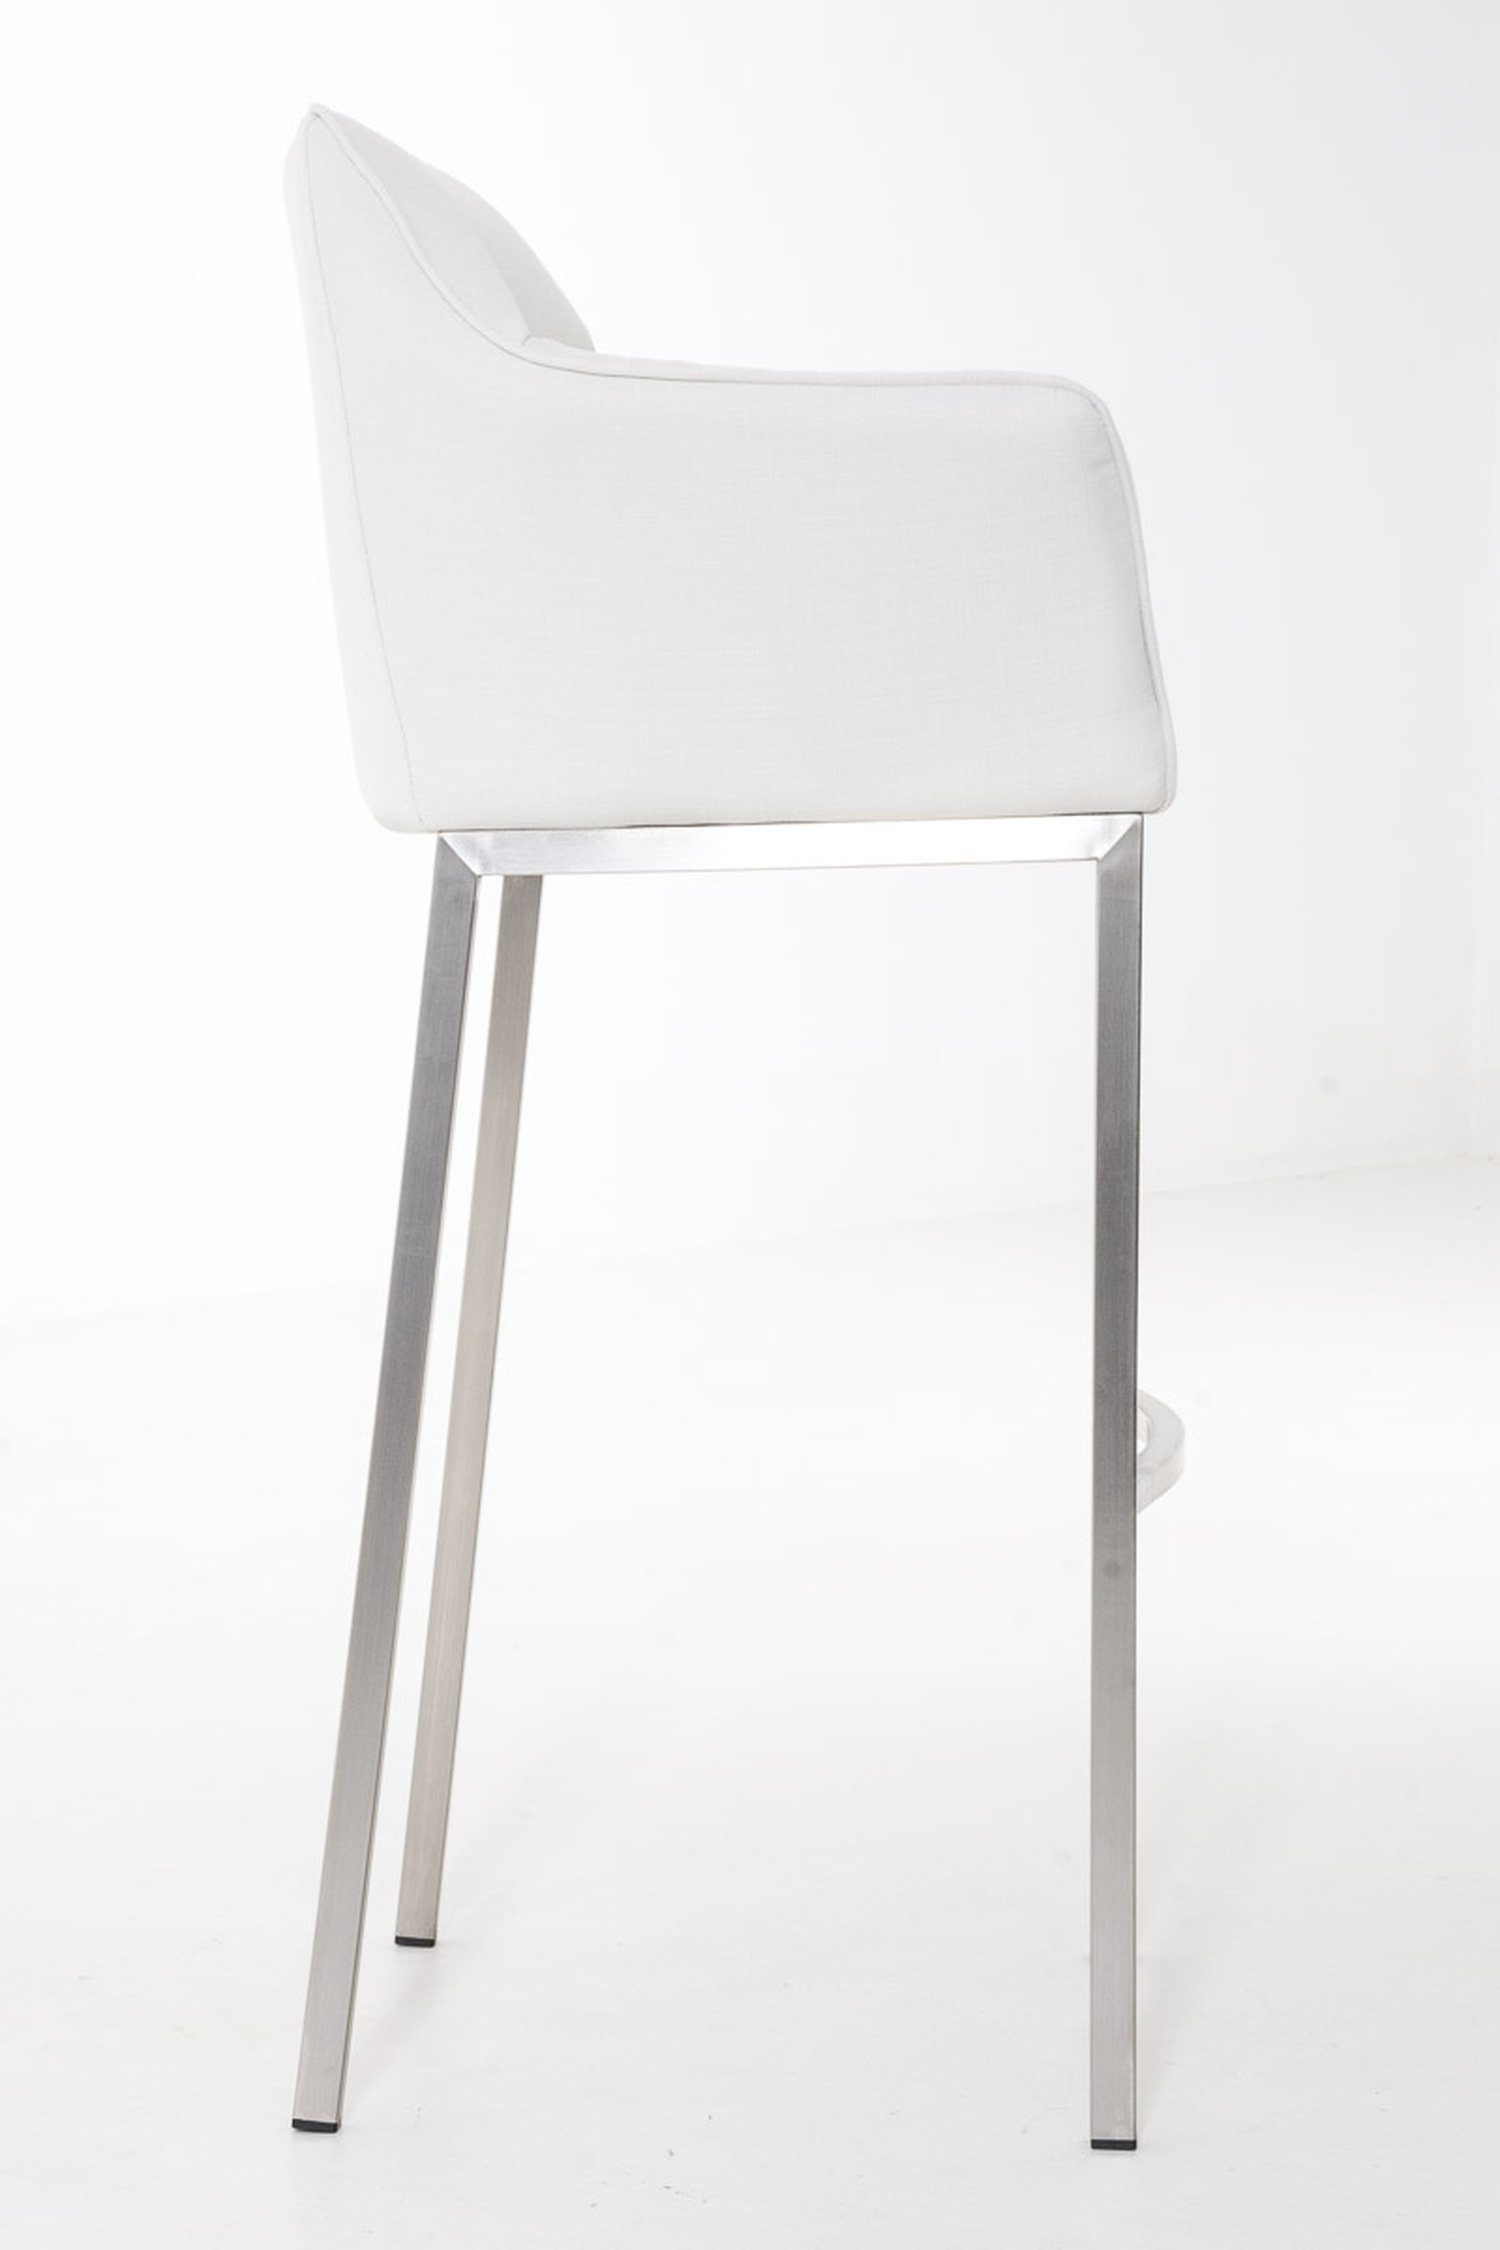 Sitzfläche: Weiß Hocker für Barhocker Rückenlehne Gestell & 4-Fuß - TPFLiving Küche), - und Stoff Edelstahl Fußstütze Theke Damaso (mit